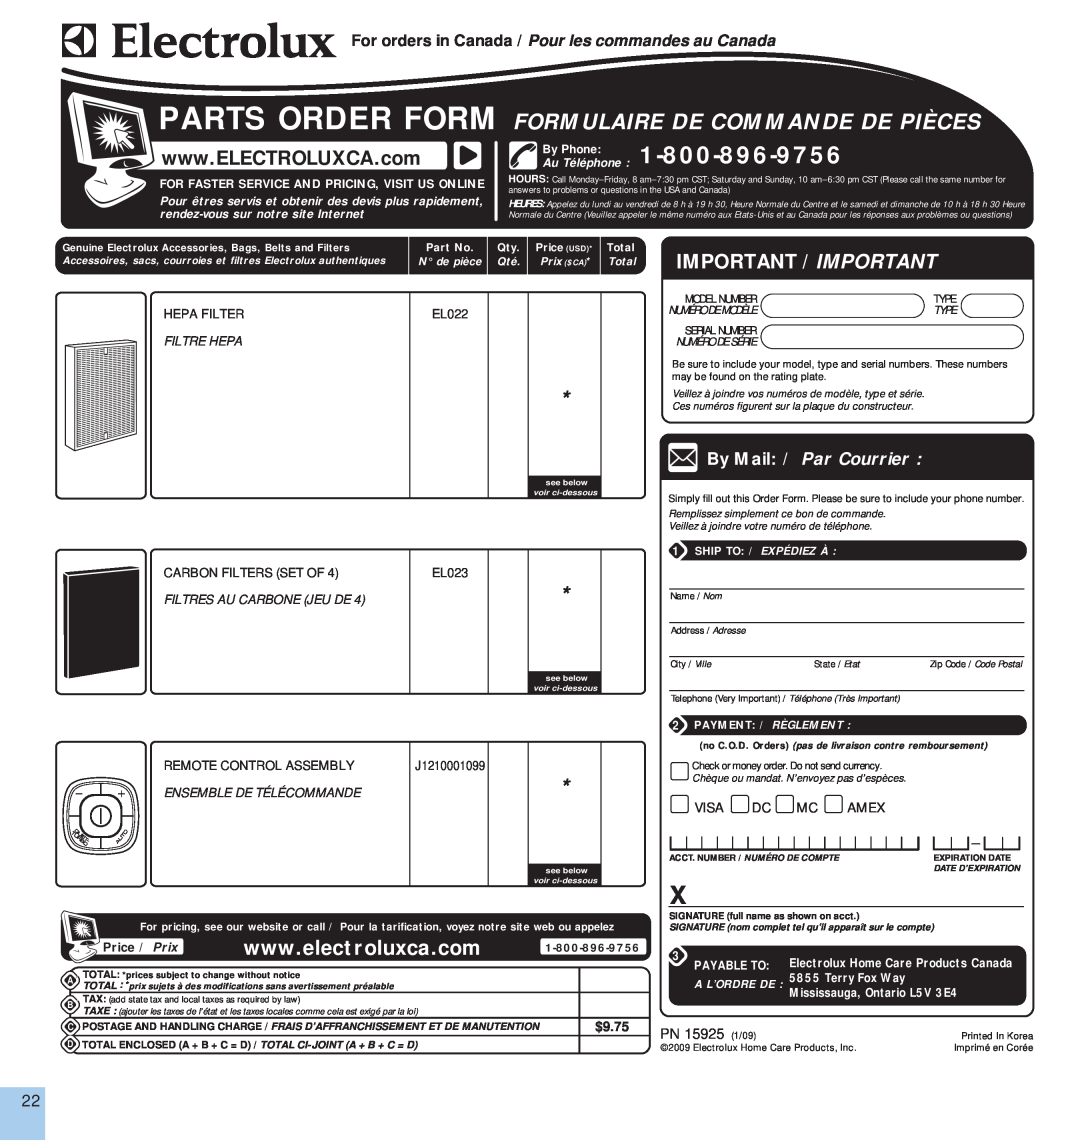 Electrolux EL500AZ By Phone, Important / Important, Parts Order Form Formulaire De Commande De Pièces, Visa Dc Mc Amex 